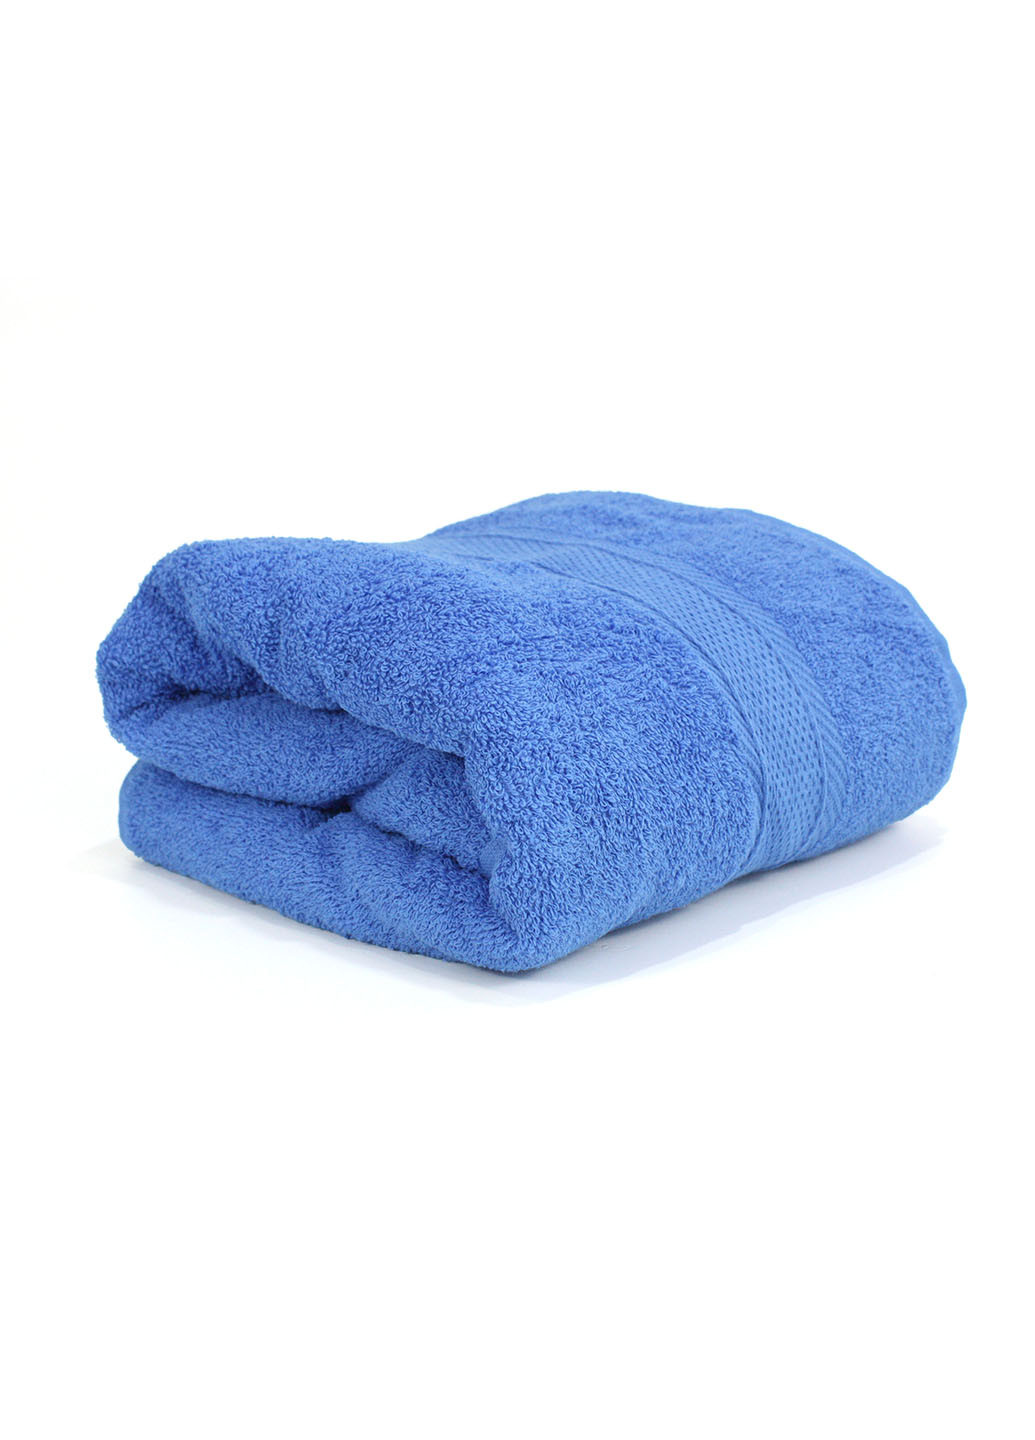 Еней-Плюс полотенце махровое бз0008 40х70 синий производство - Украина